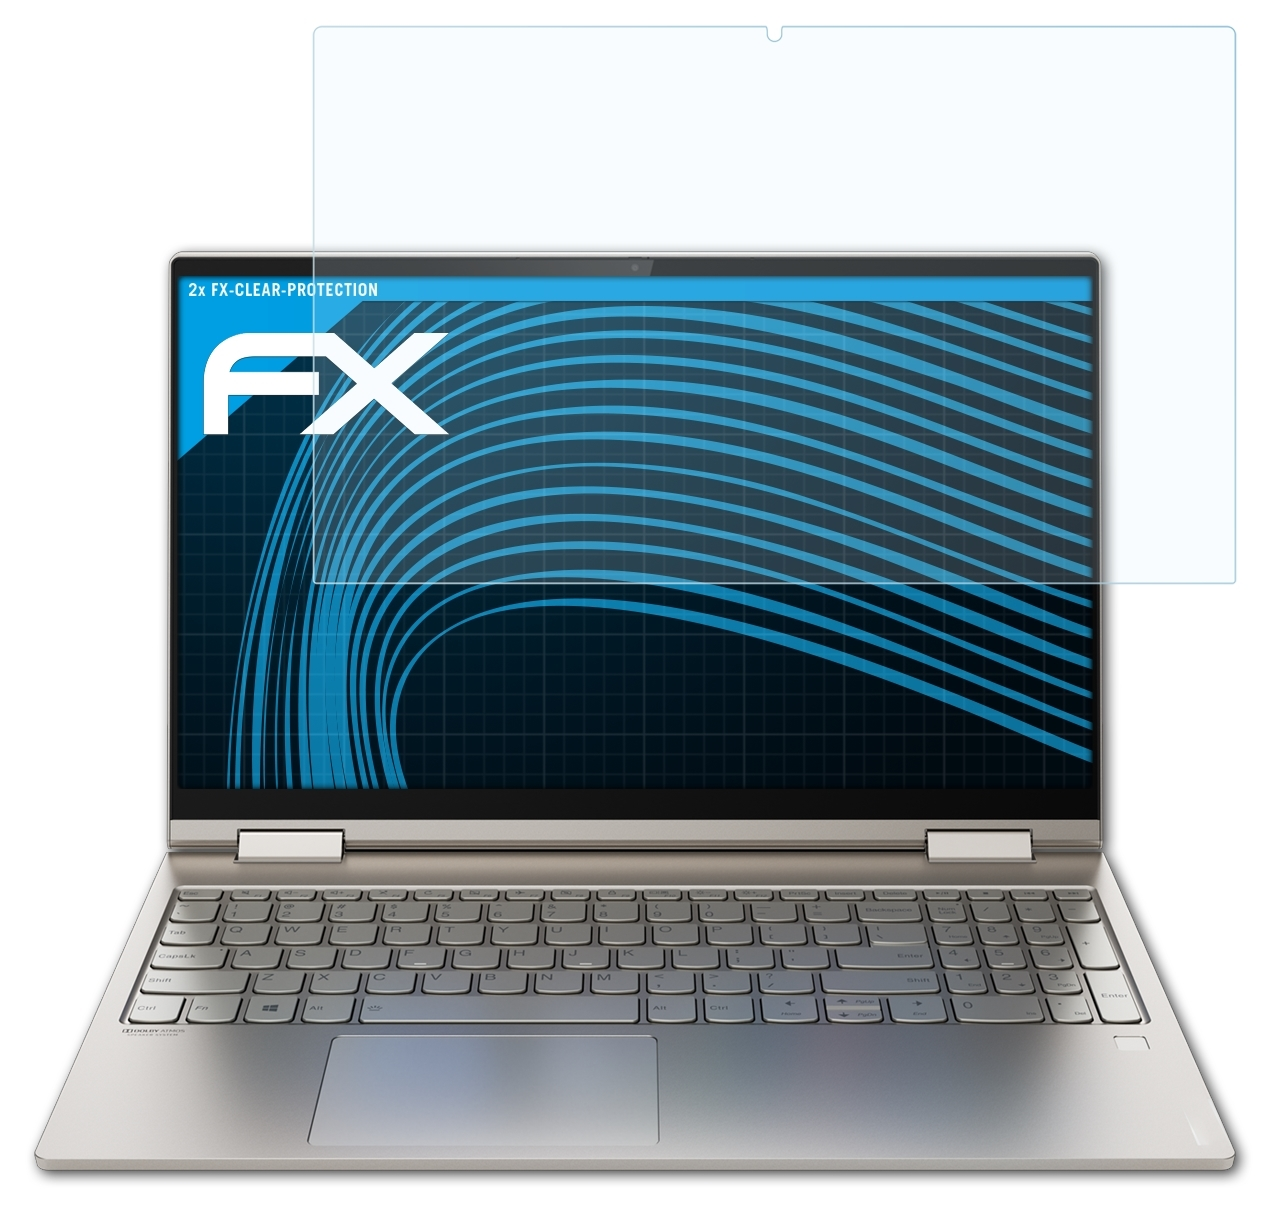 ATFOLIX 2x FX-Clear Inch)) Displayschutz(für (15 Yoga C740 Lenovo